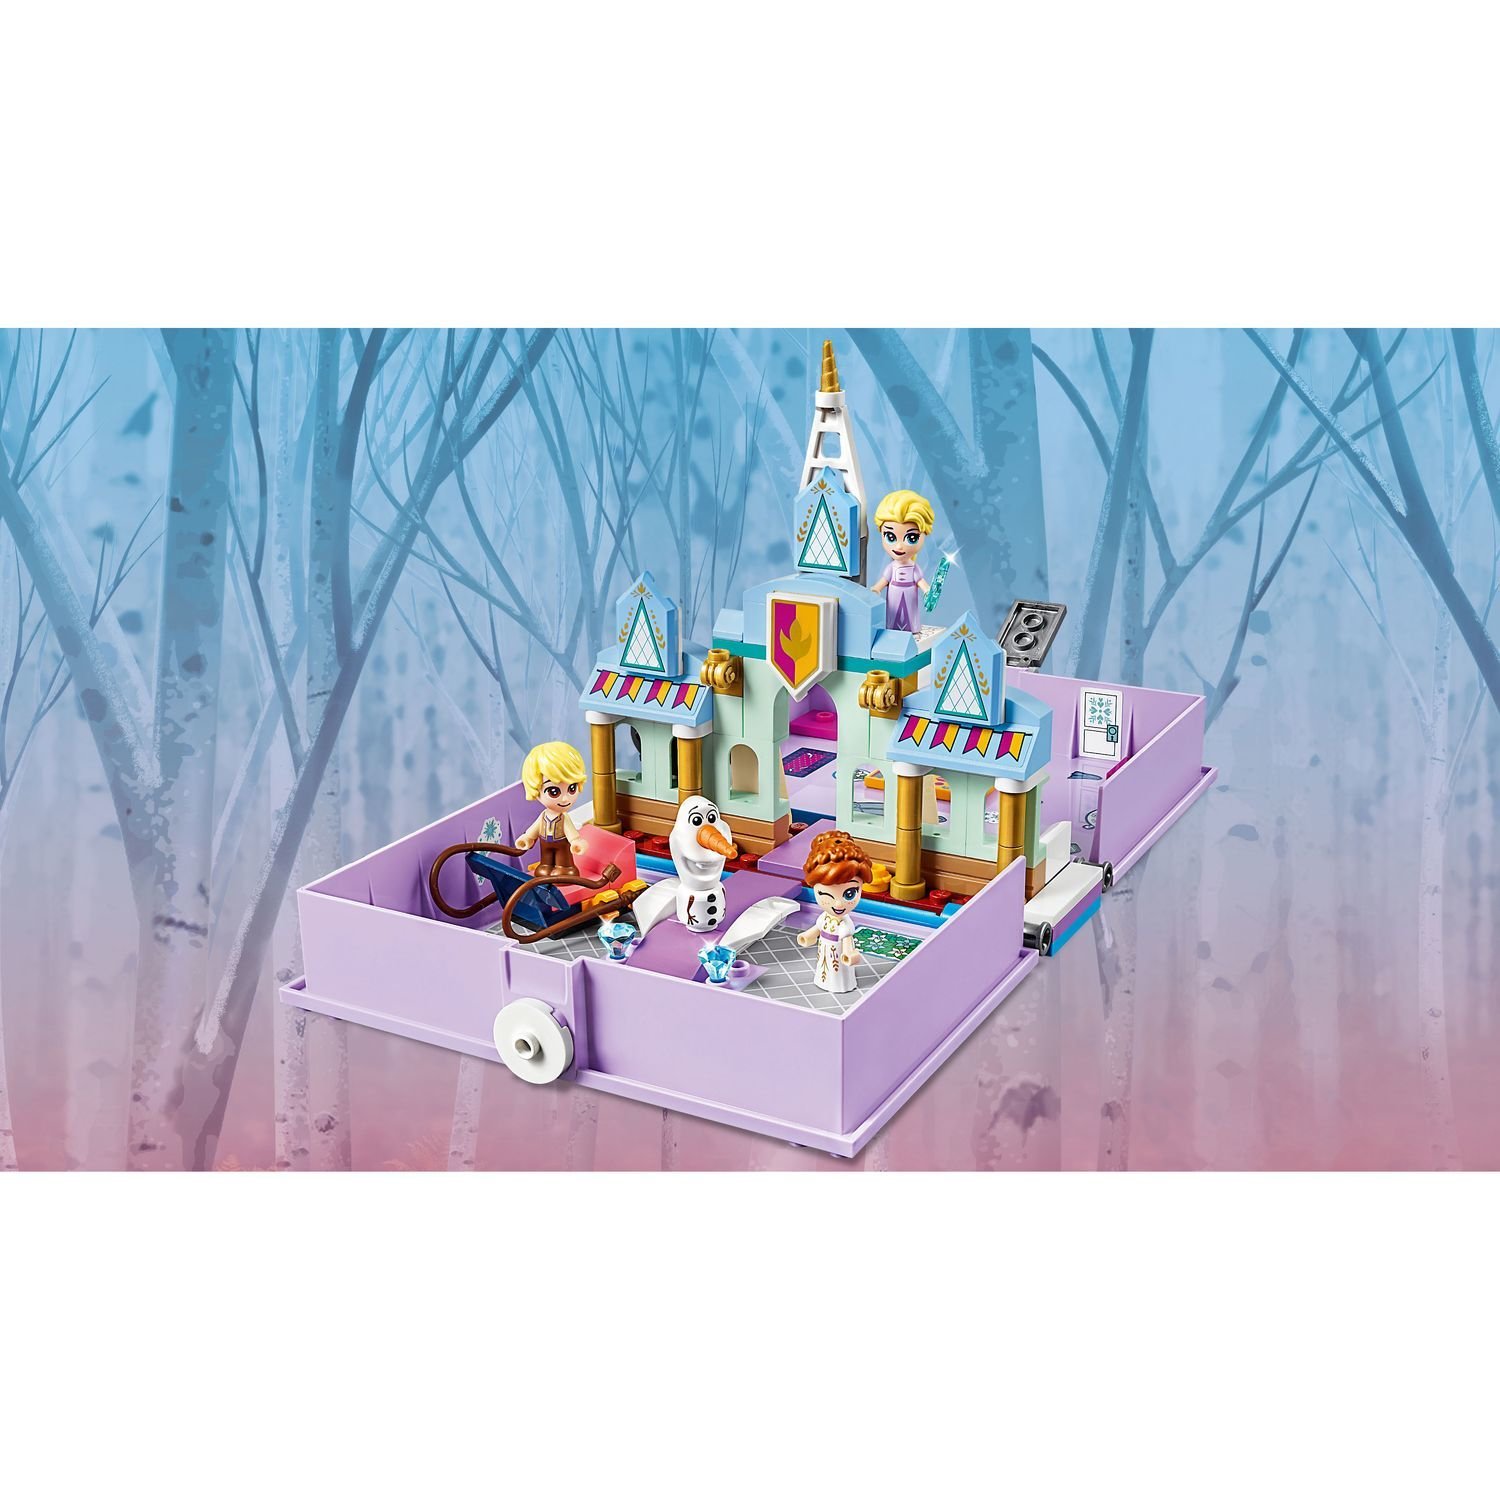 Конструктор LEGO Disney Frozen II 43175 Книга сказочных приключений Анны и Эльзы